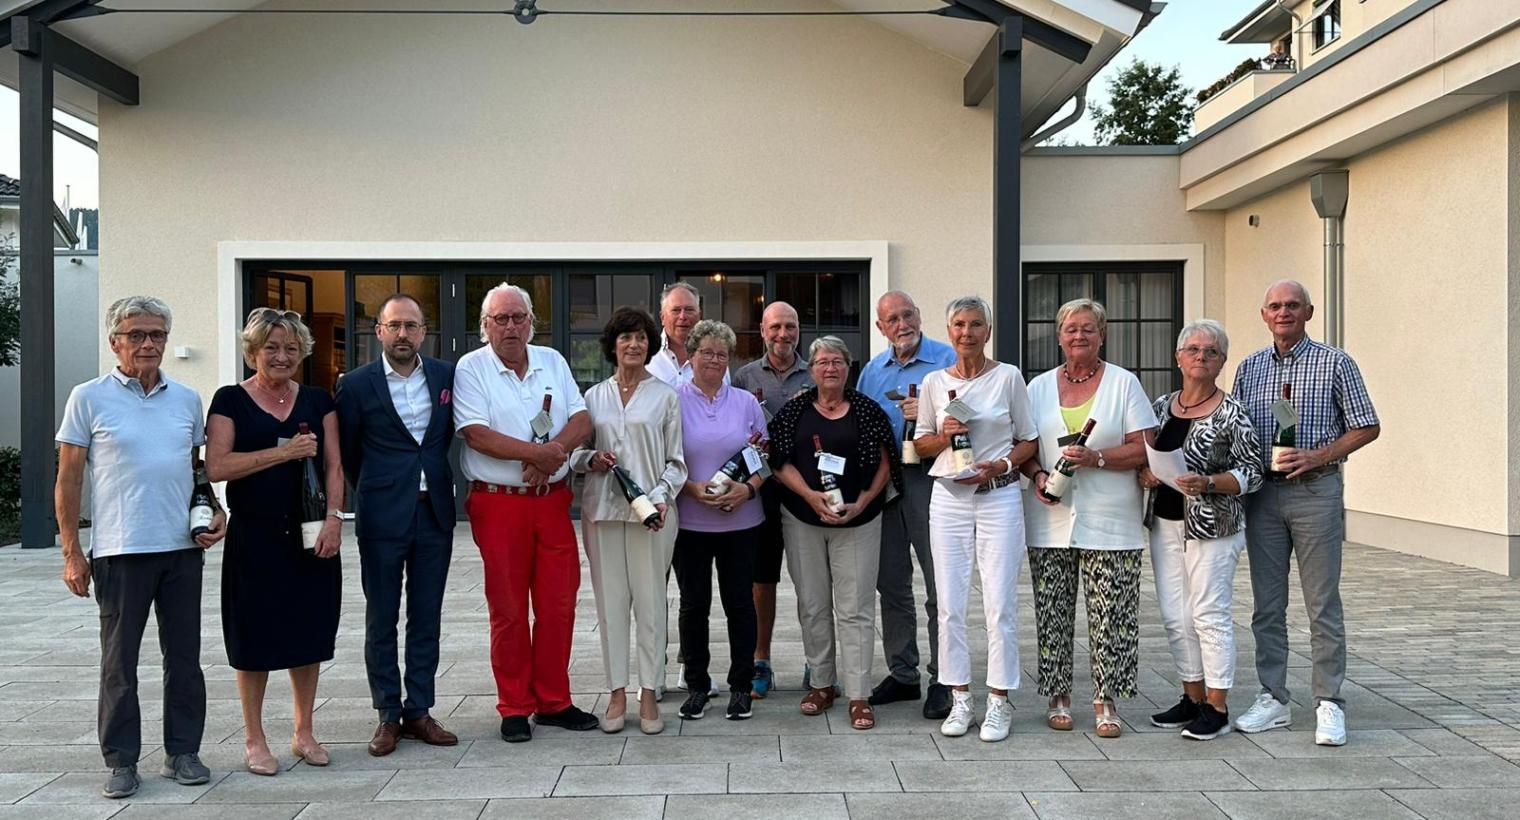 Preis des WohnGut Saalhausen im Golfclub Schmallenberg e.V.